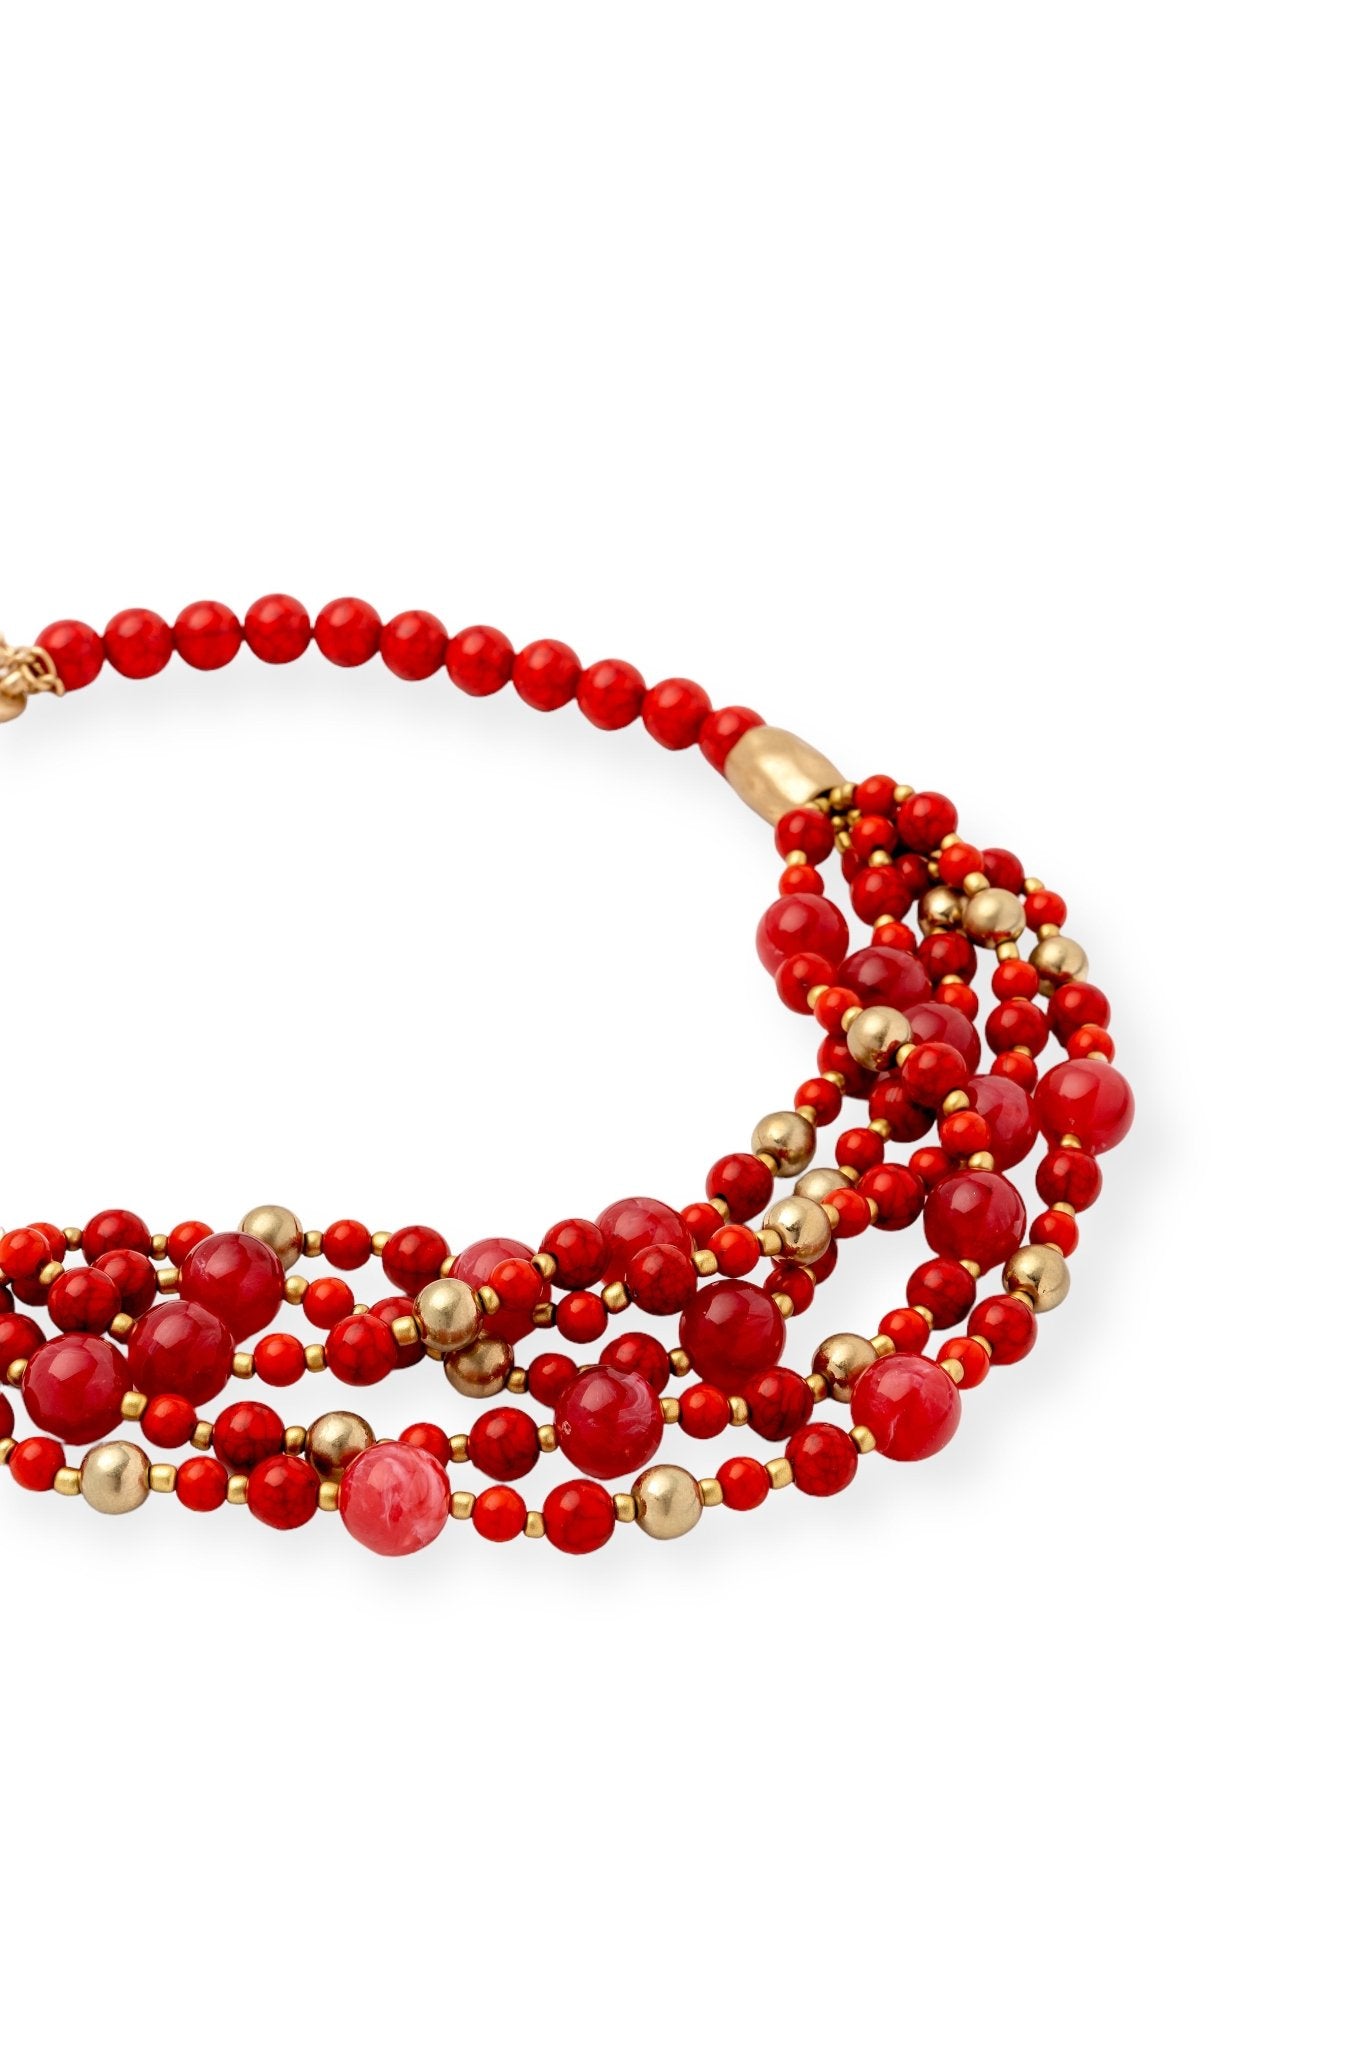 Collana Multifili con sfere rosse e oro - Mya Accessories